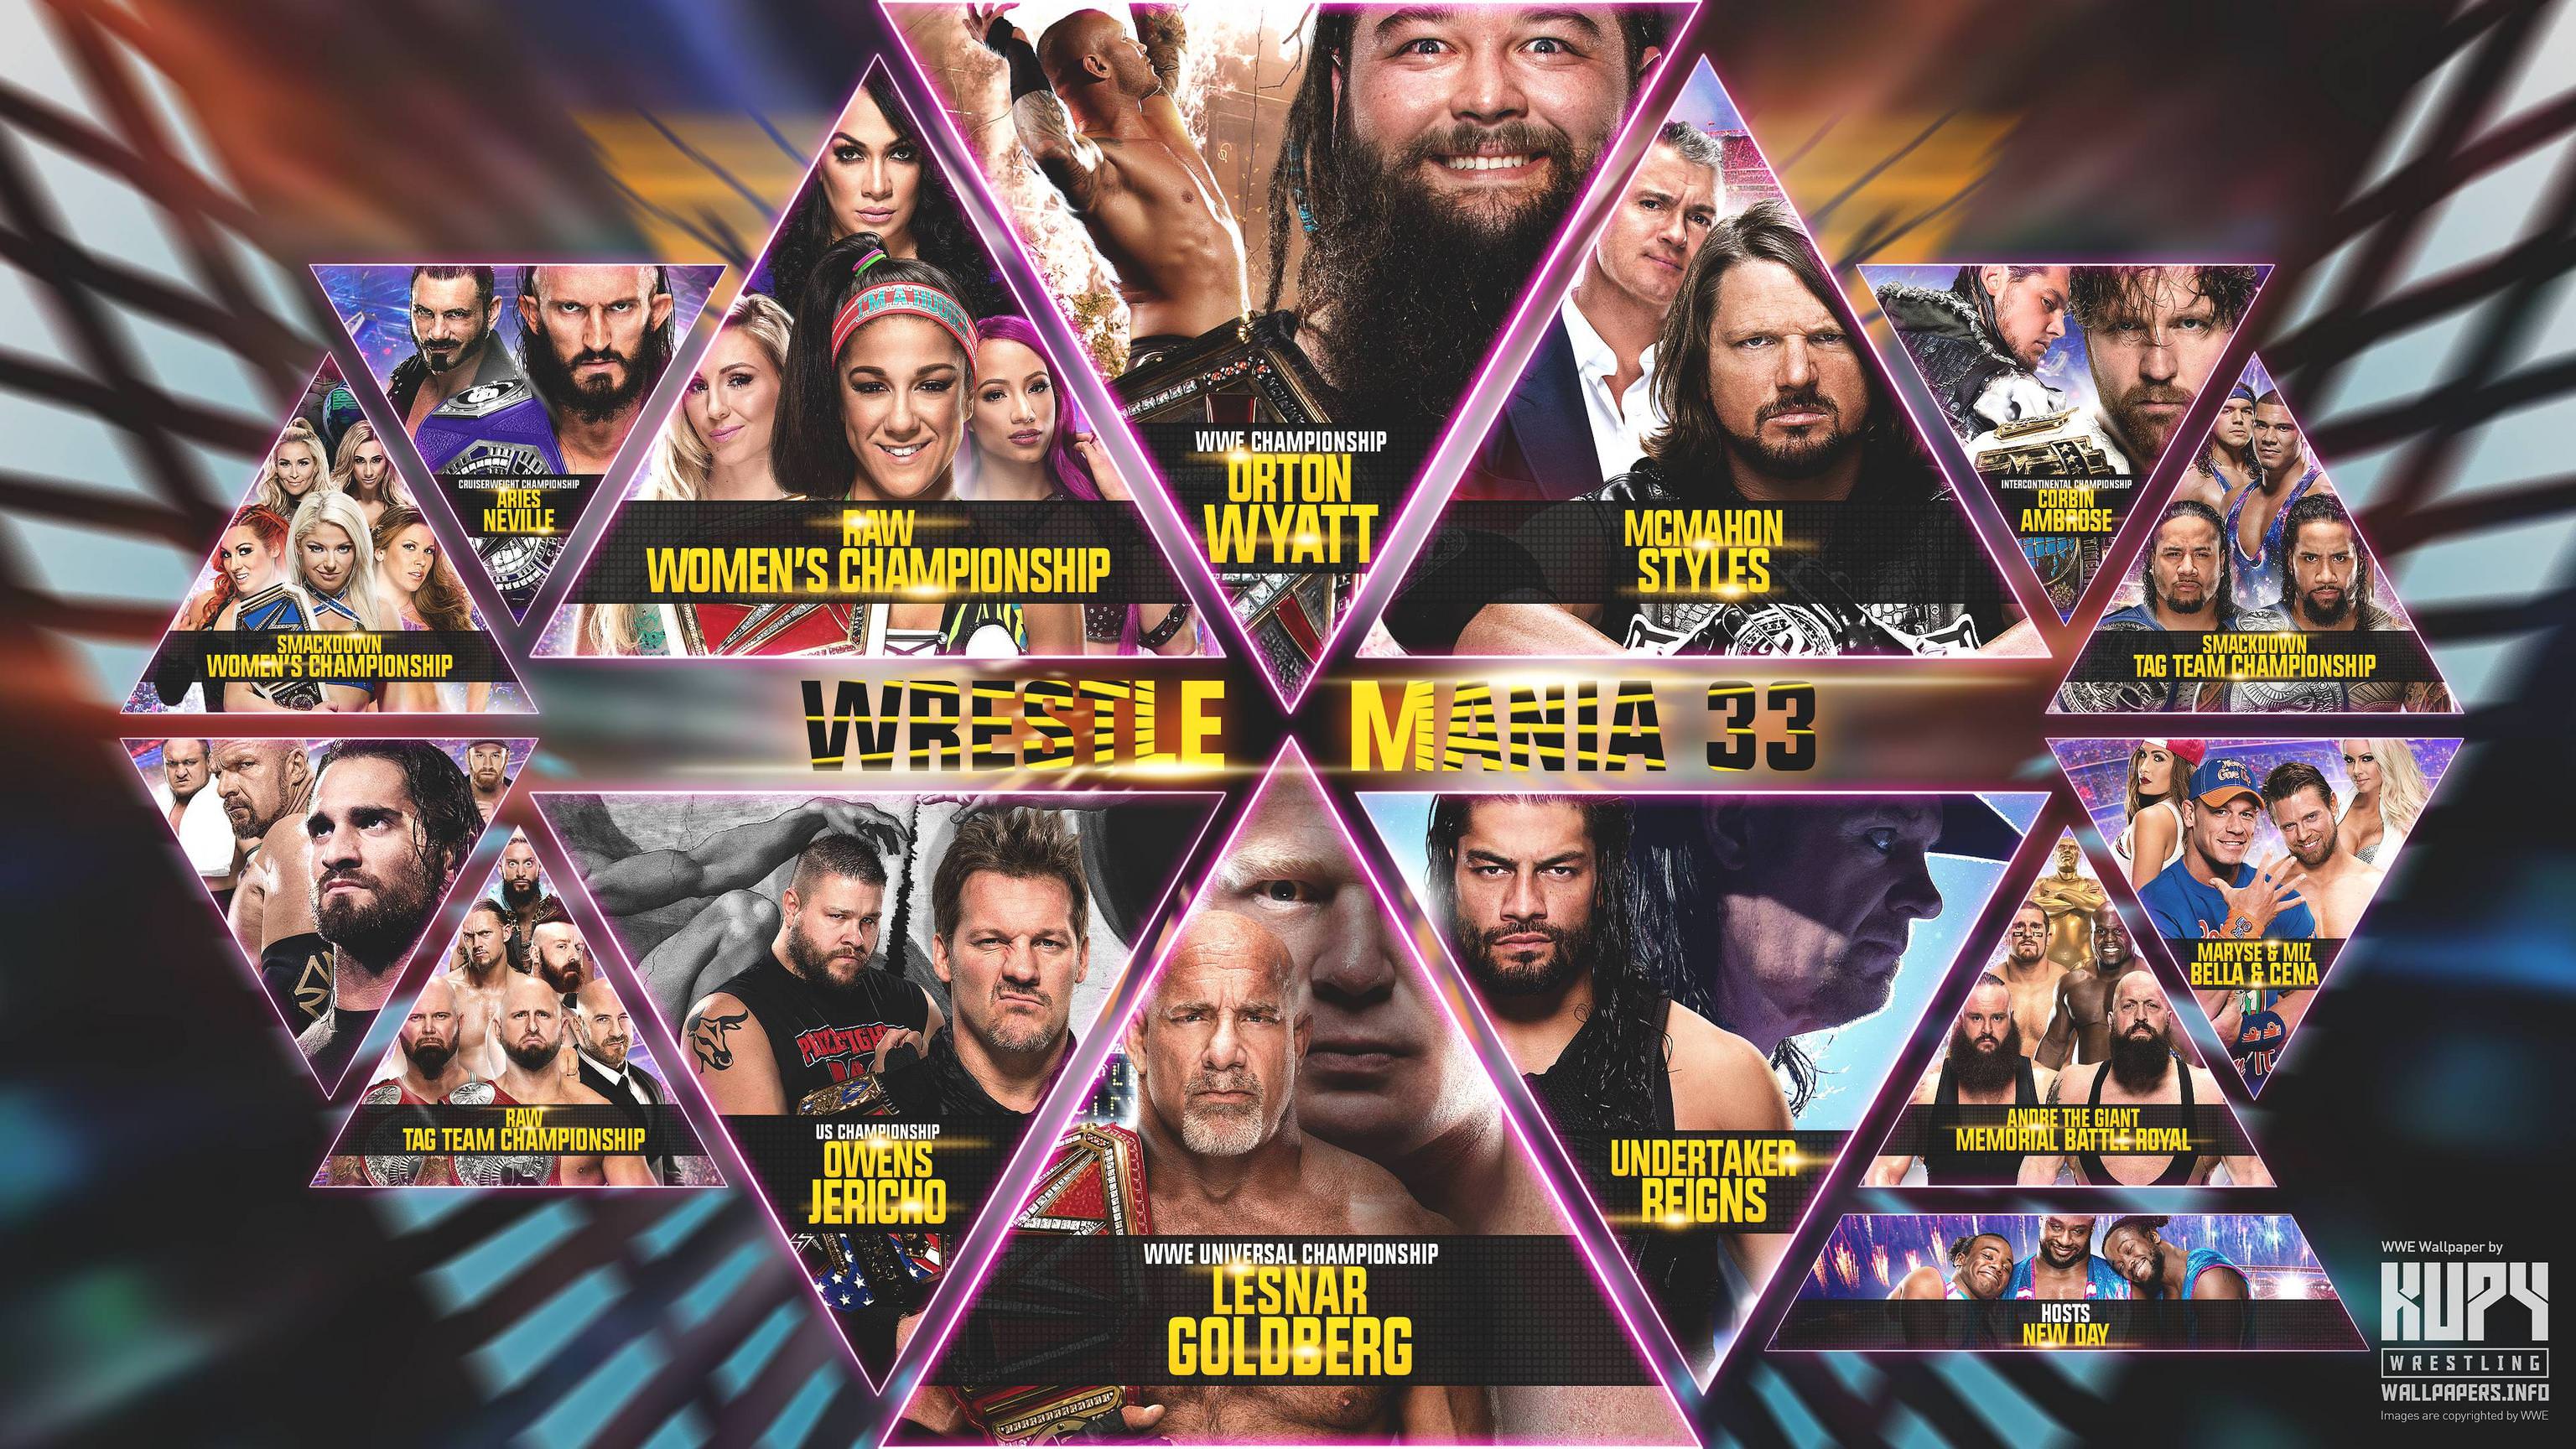 NEW WrestleMania 33 wallpaper! Wrestling Wallpaper